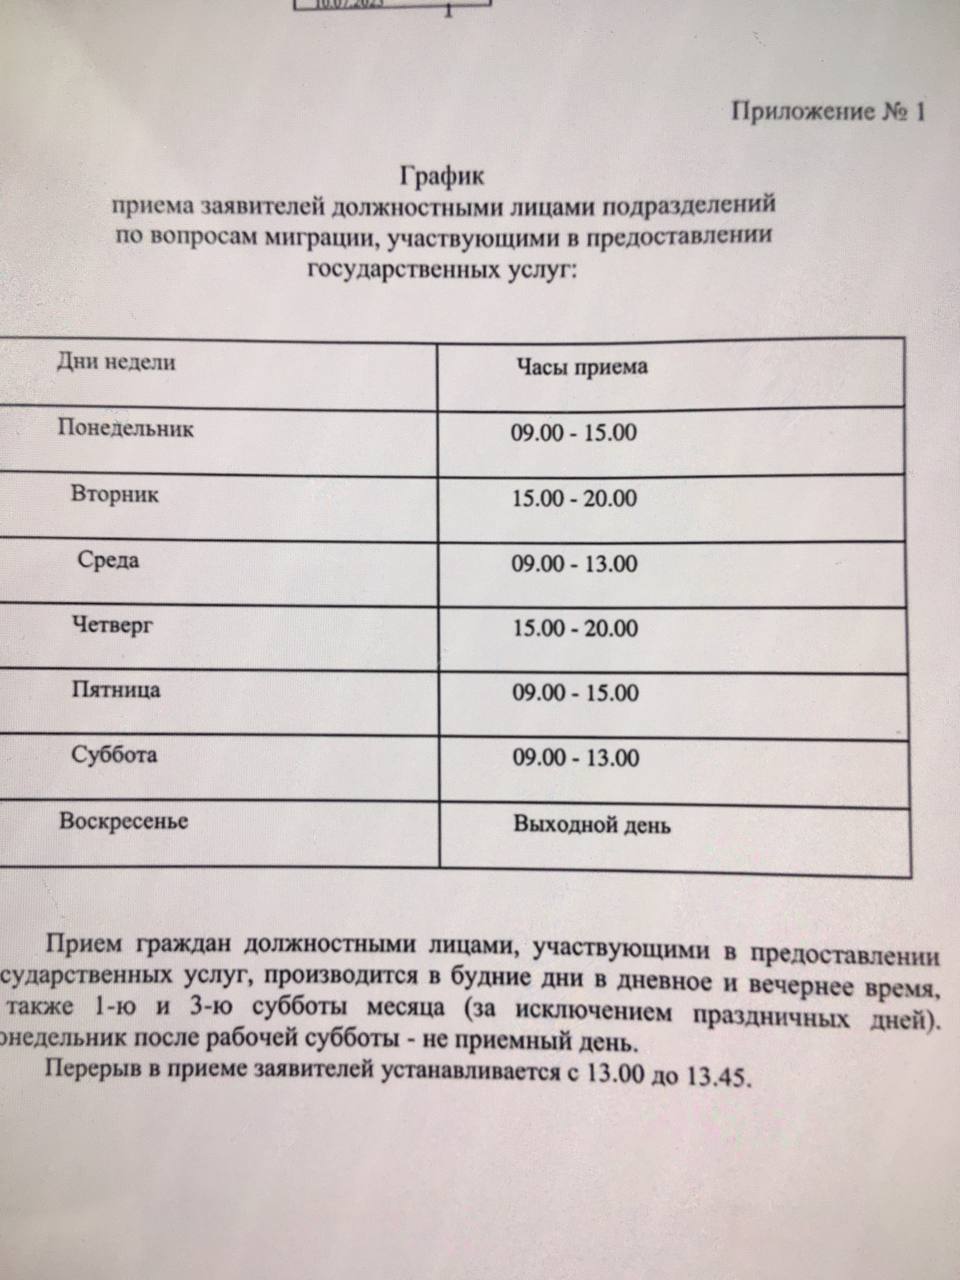 Оформление и получение загранпаспорта в Москве